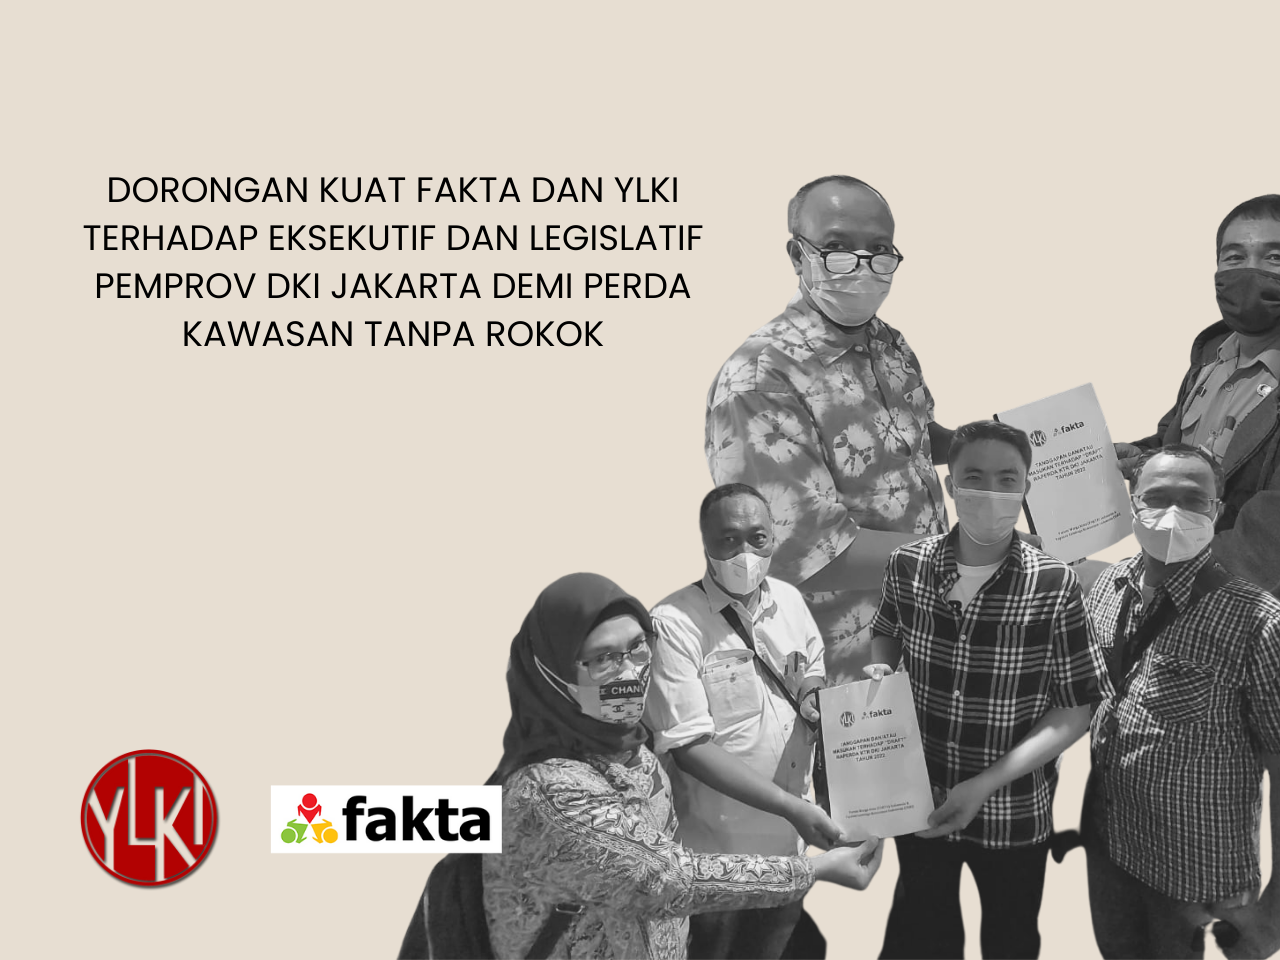 Mendorong Legislatif dan Eksekutif untuk segera mengundangkannya Rancangan Peraturan Daerah Kawasan Tanpa Rokok (Raperda KTR) DKI Jakarta.